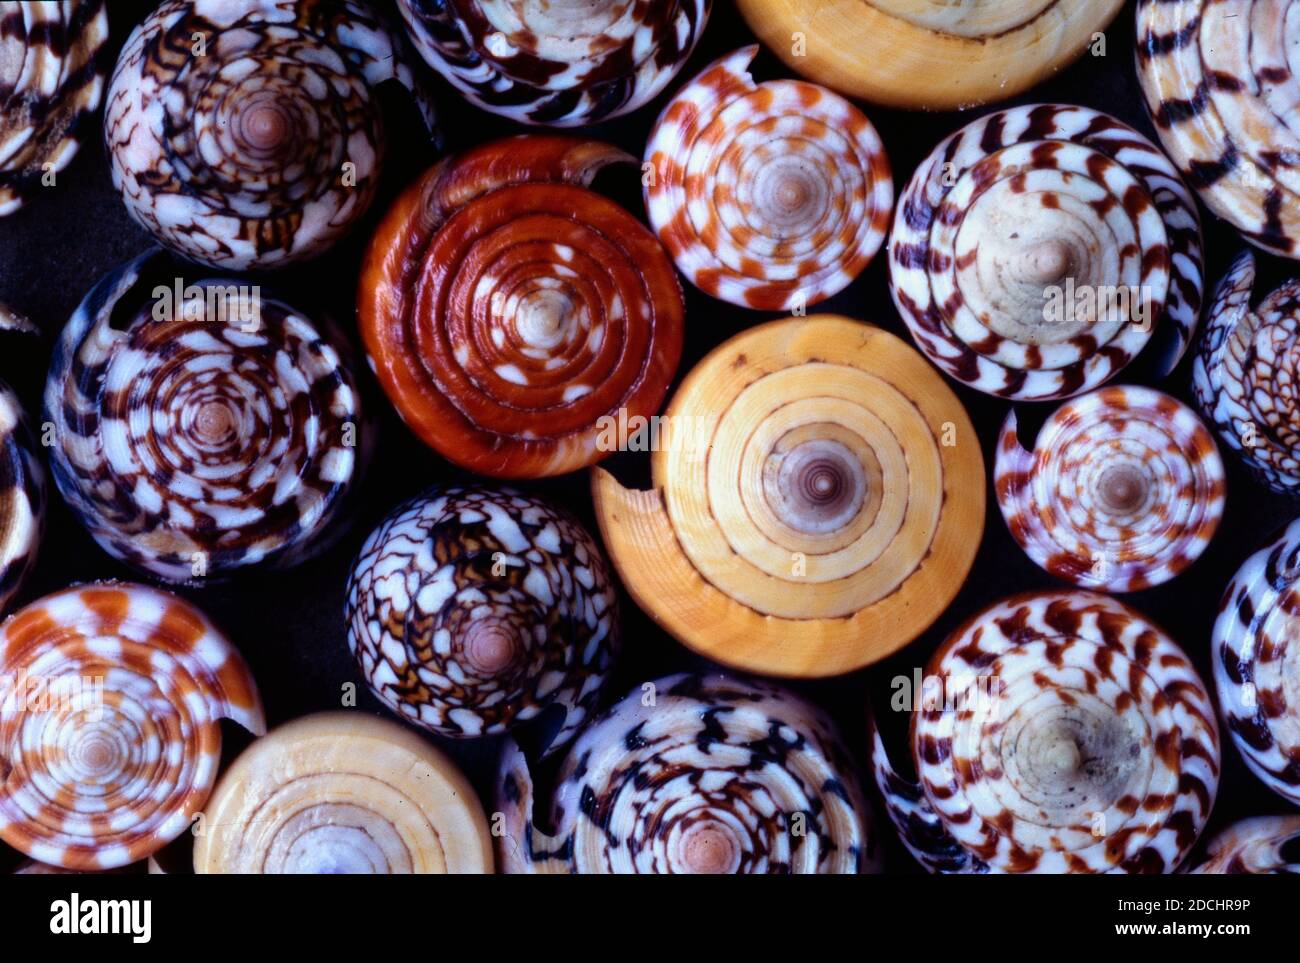 Arrangement or Spirals of Assorted Cone Shells, Seashells or Sea Shells Conus species Stock Photo